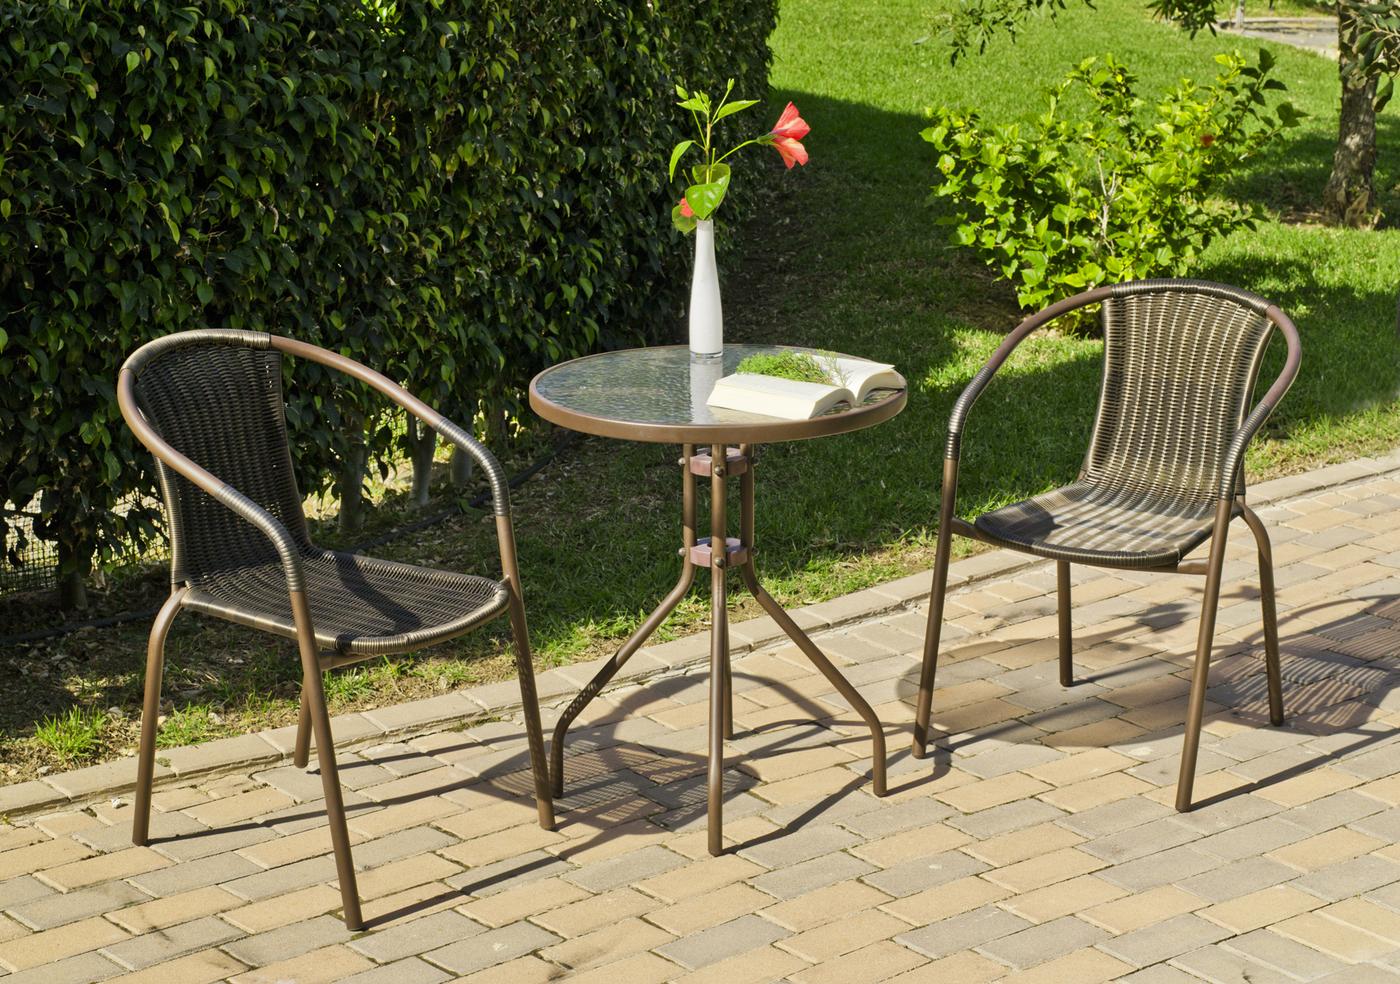 Conjunto de acero color bronce: mesa redonda de 60 cm. Con tapa de cristal templado + 2 sillones apilables de acero y ratán sintético